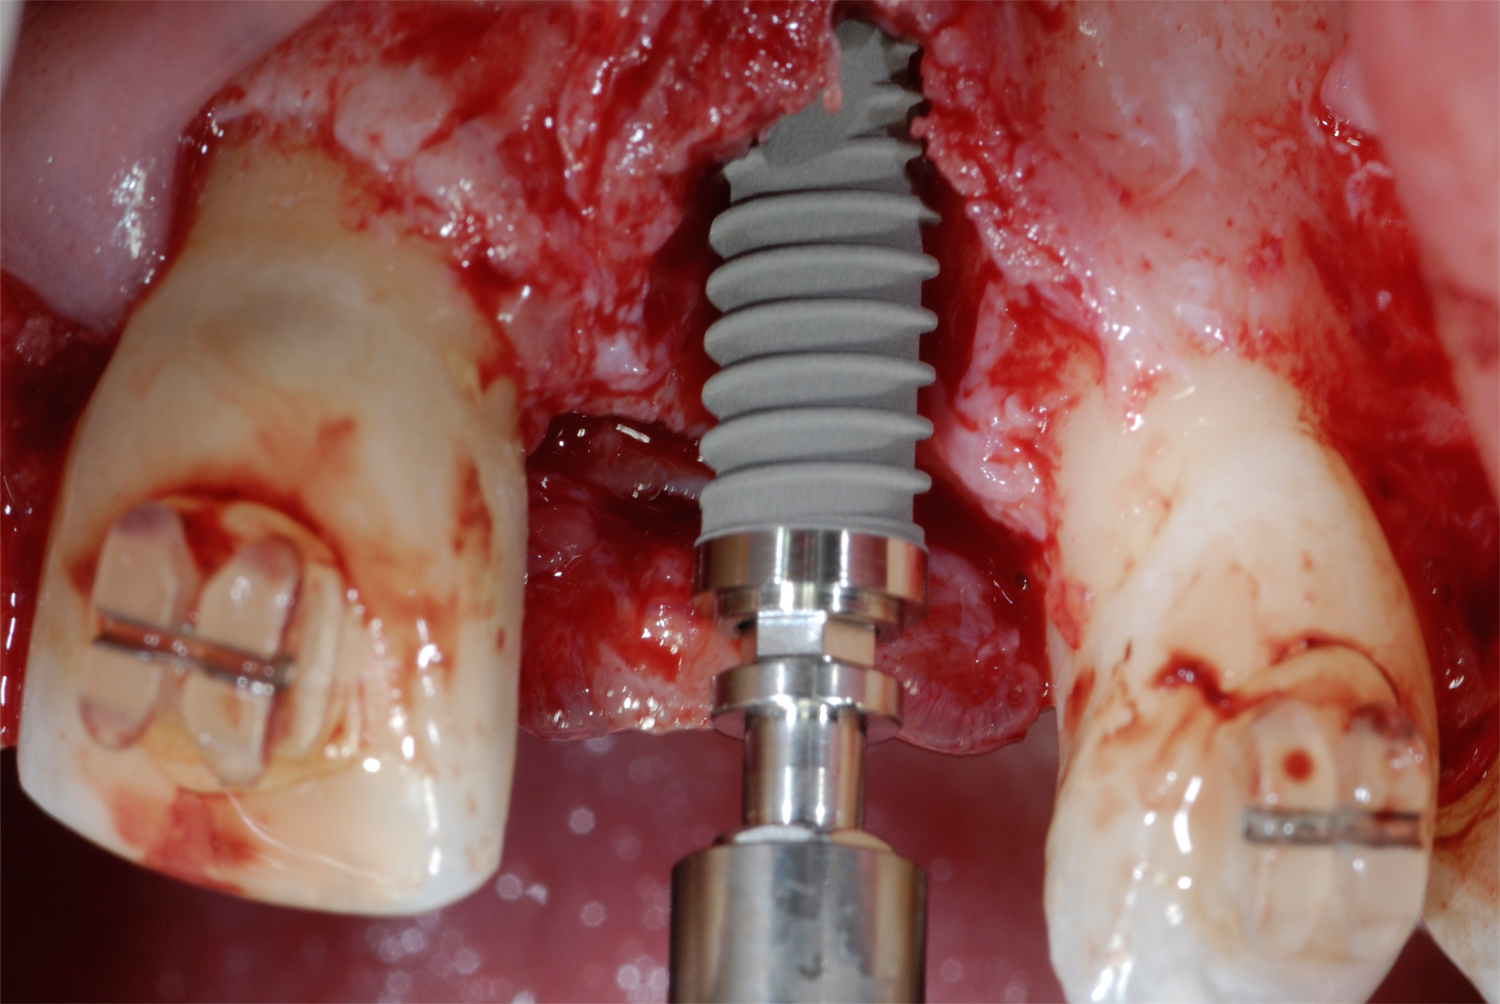 牙周膜龈手术+植骨（PAOO）记录 - 知乎